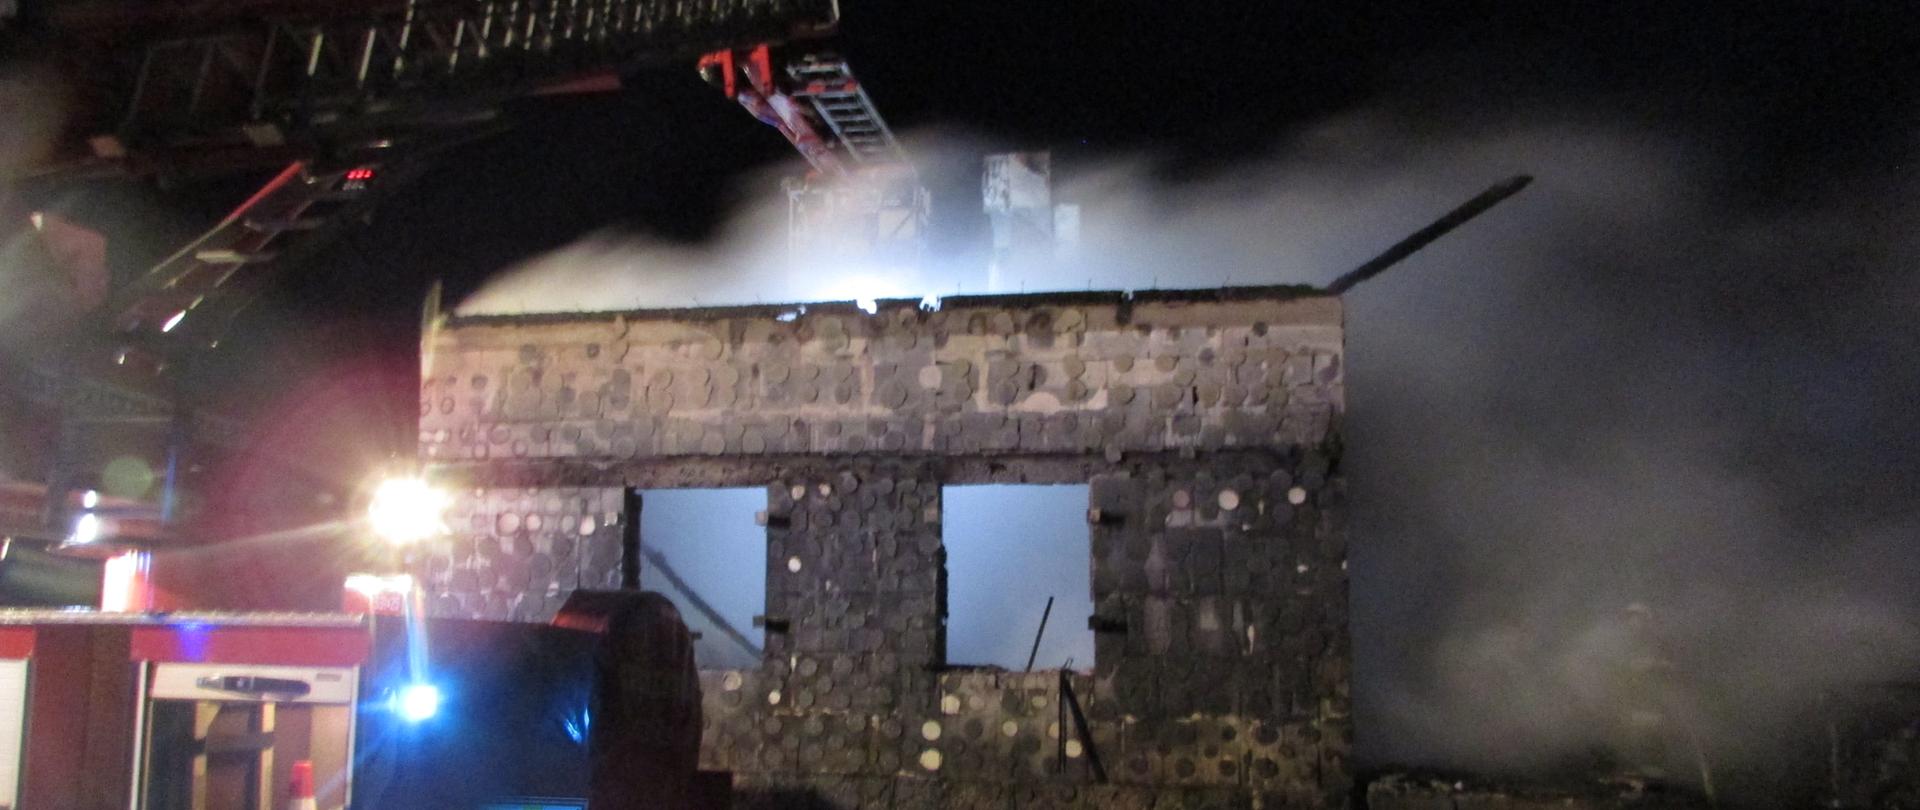 Ściana budynku po pożarze w nocy. Widoczny dym i samochód pożarniczy drabina.